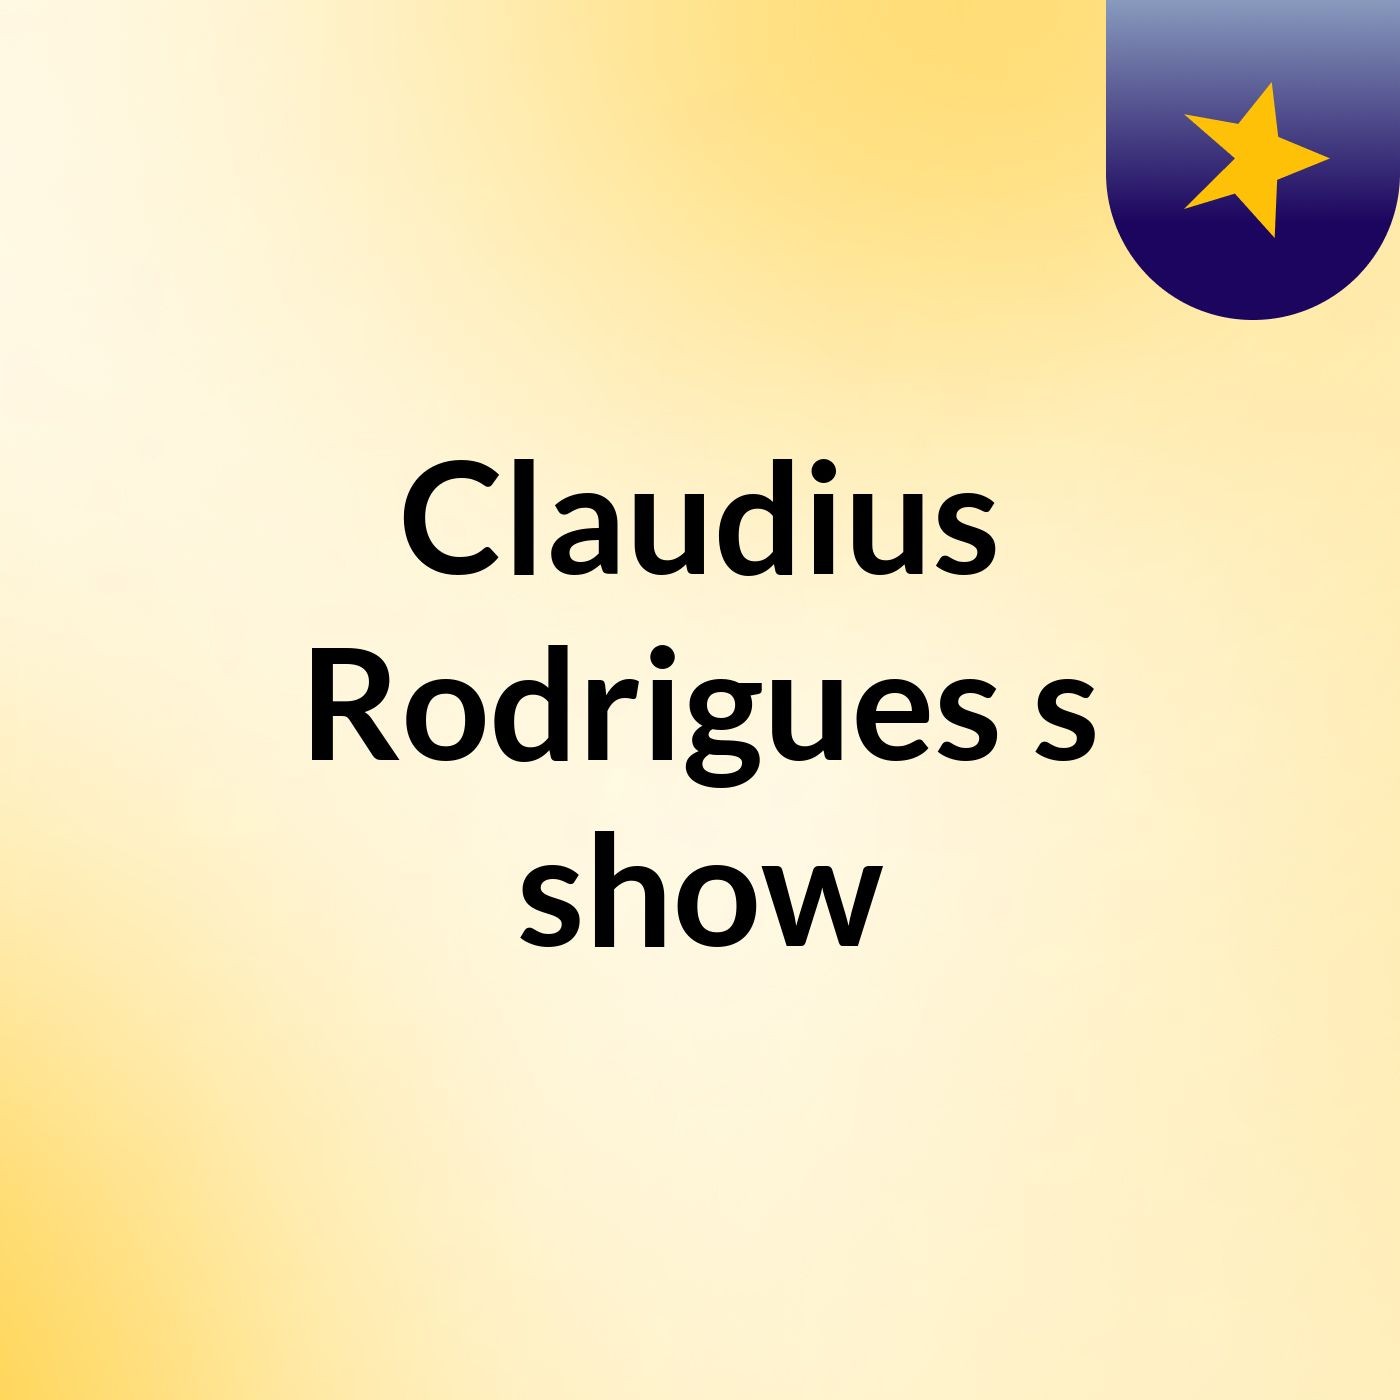 Claudius Rodrigues's show